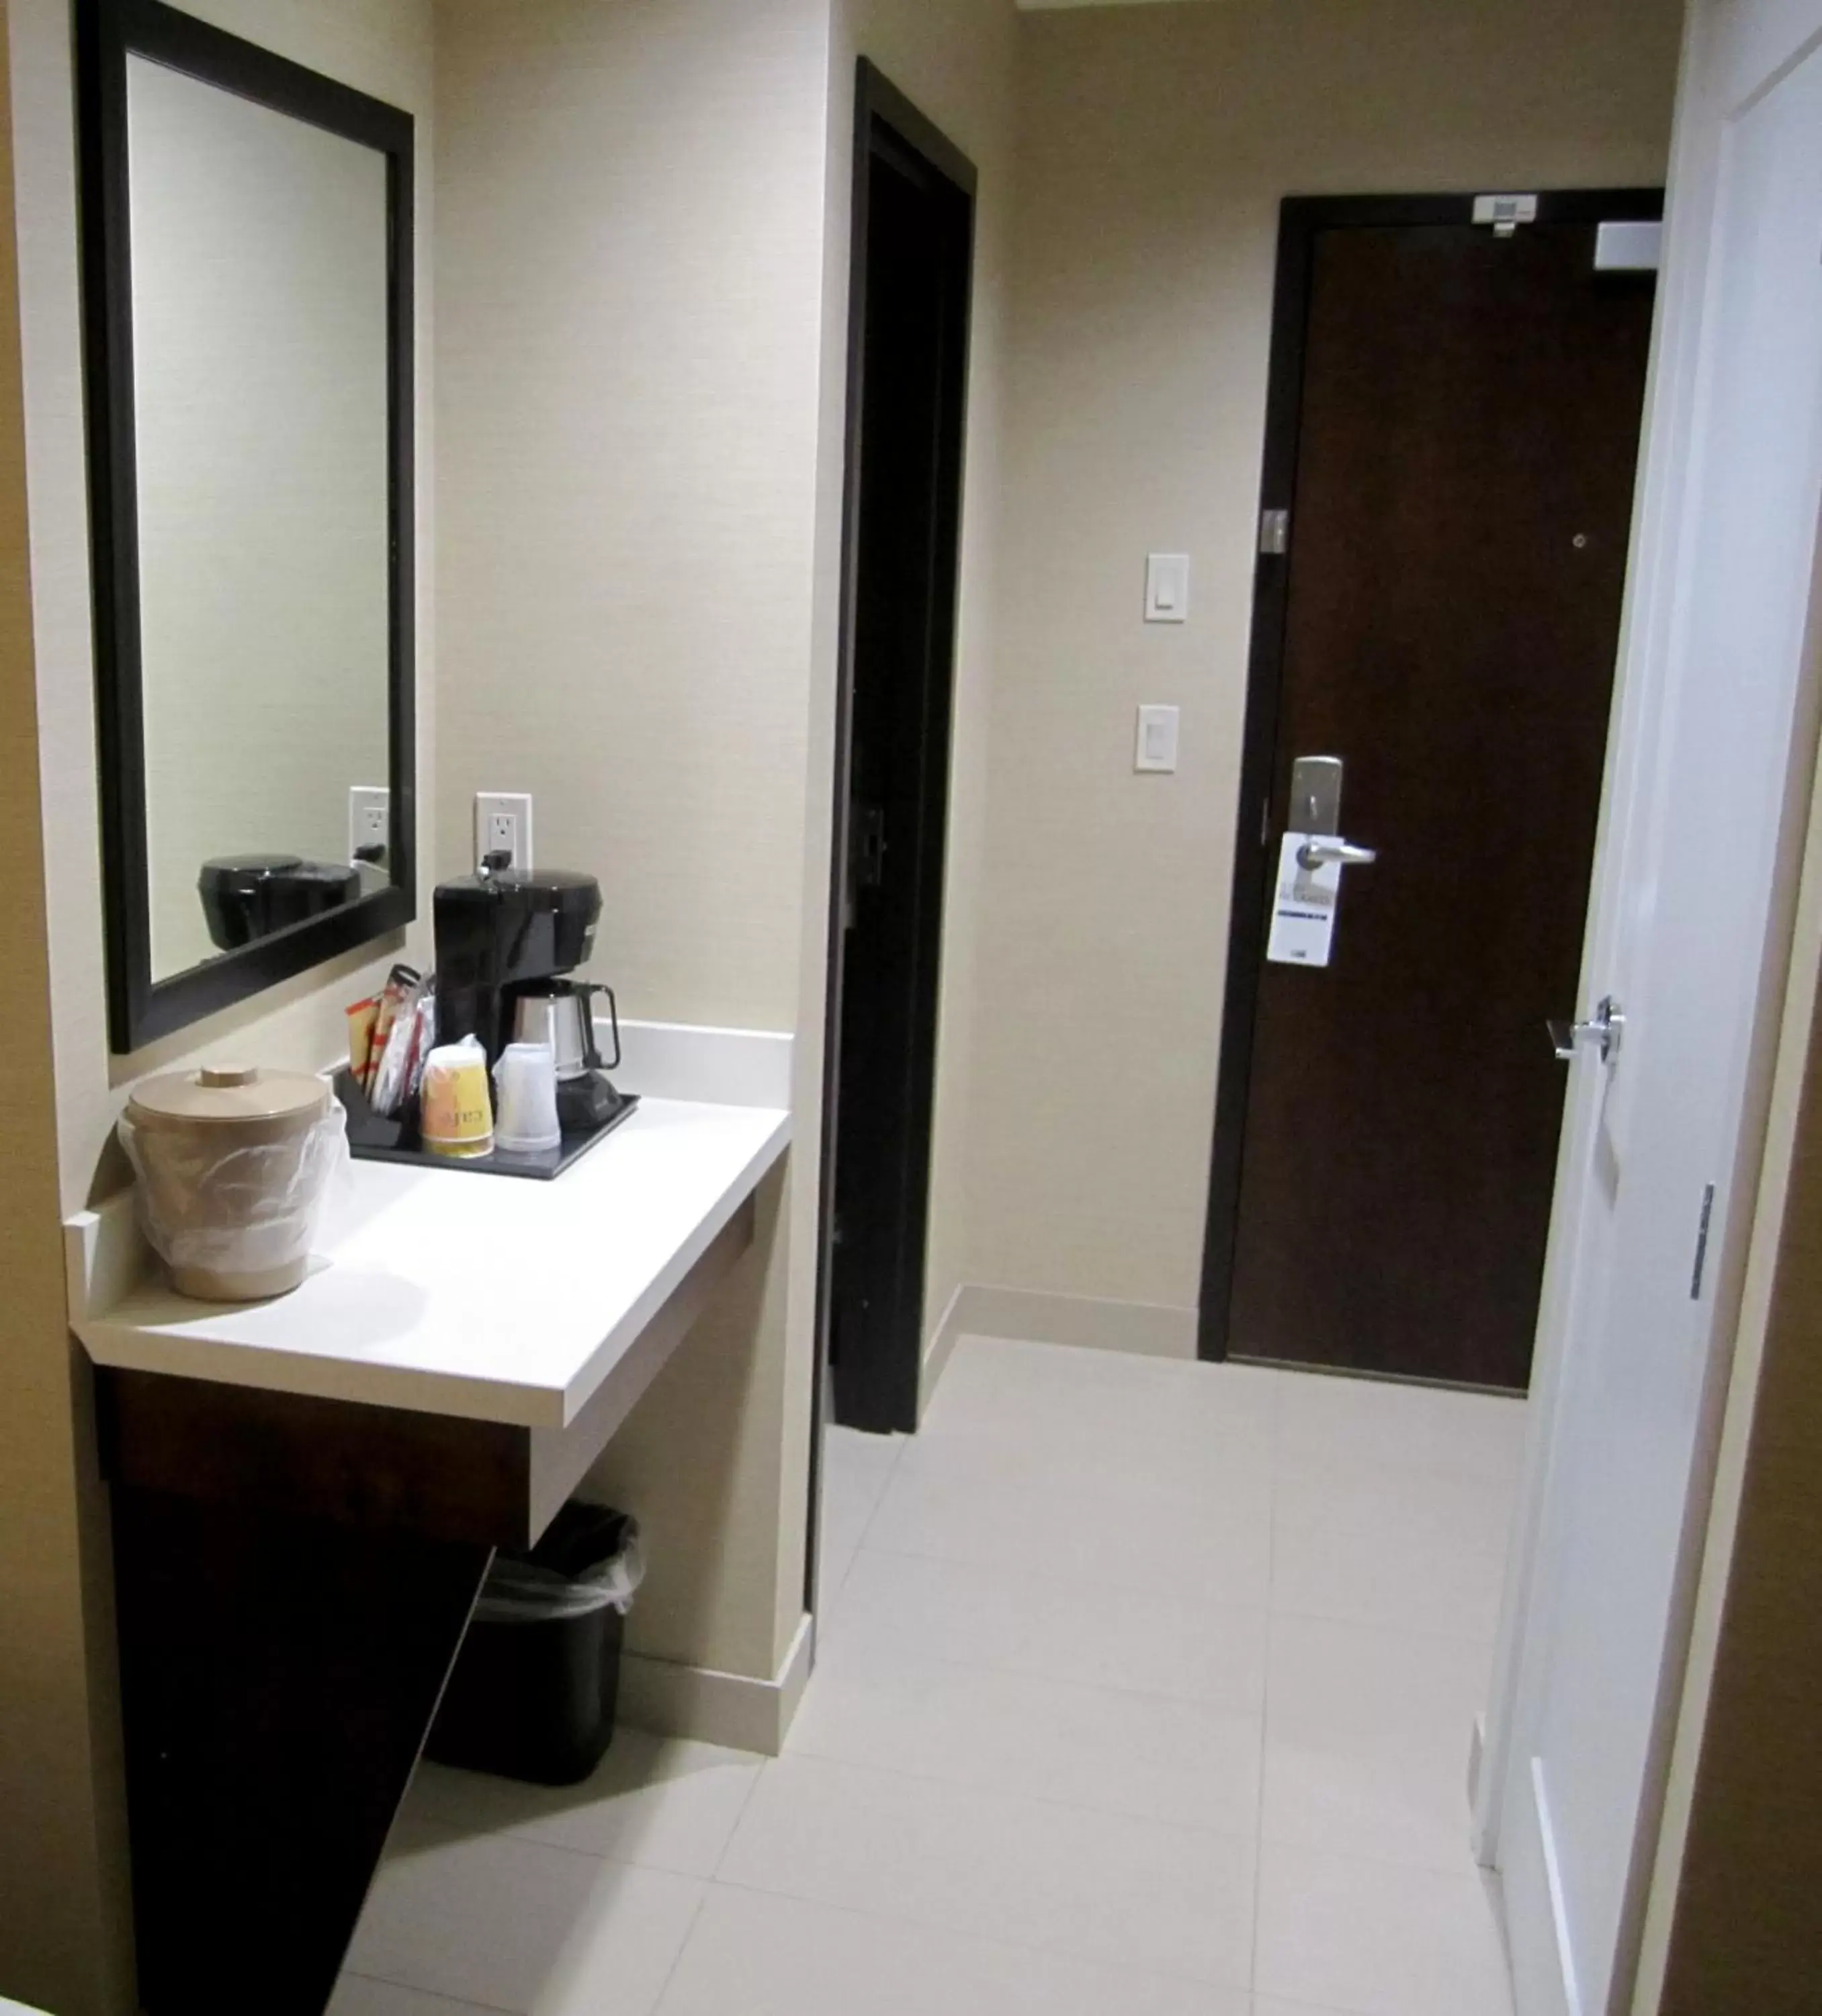 Coffee/tea facilities, Bathroom in Holiday Inn Express Golden-Kicking Horse, an IHG Hotel